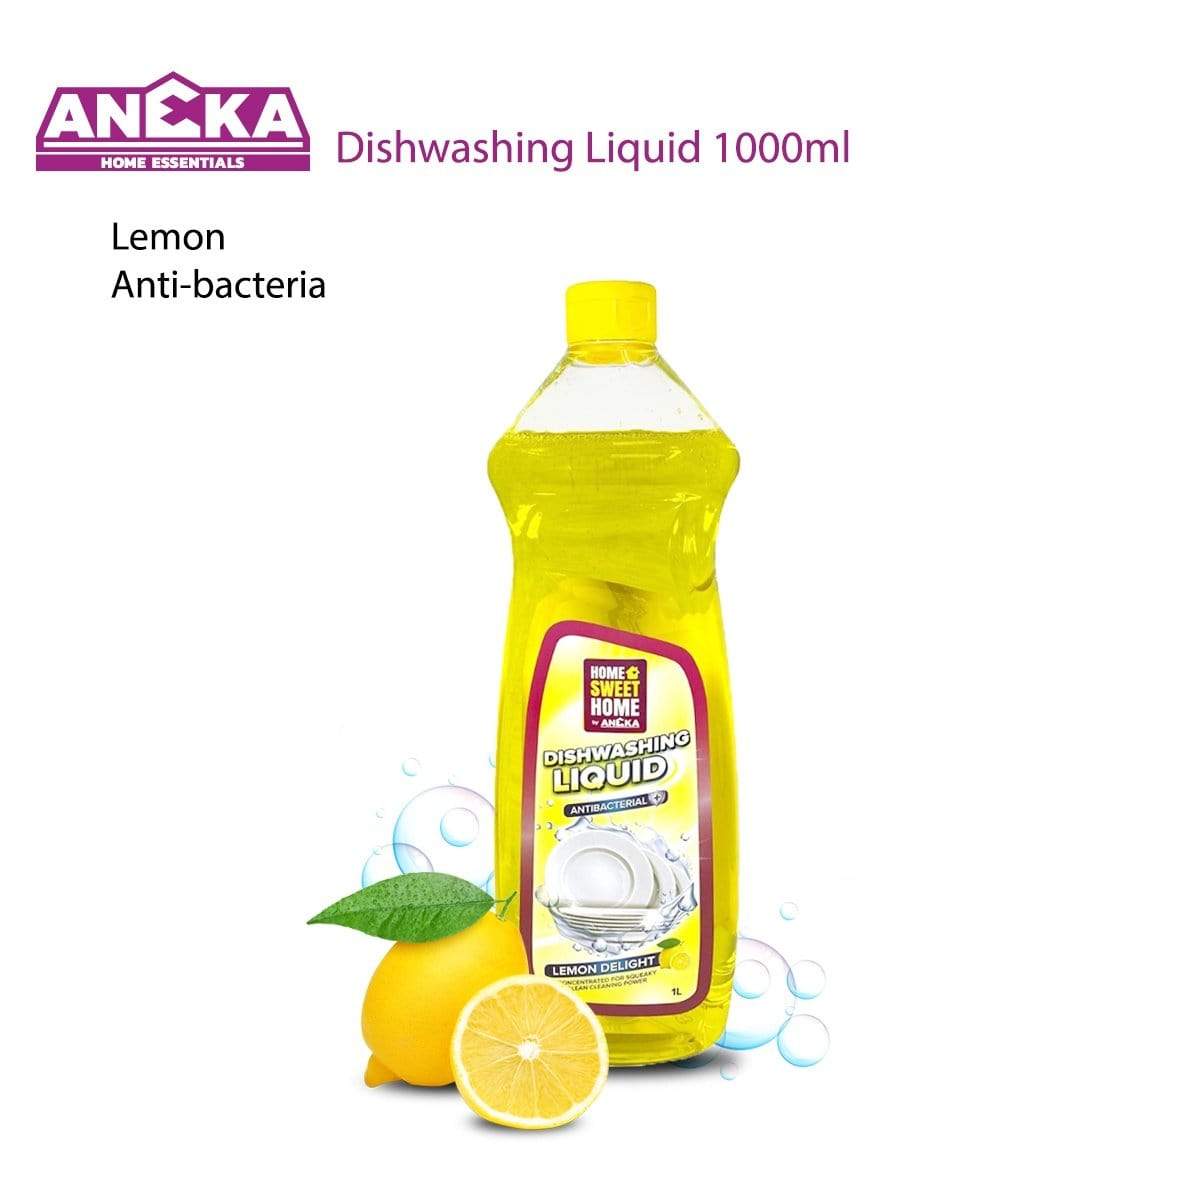 Home Sweet Home Dishwashing Liquid 1000ml Lemon